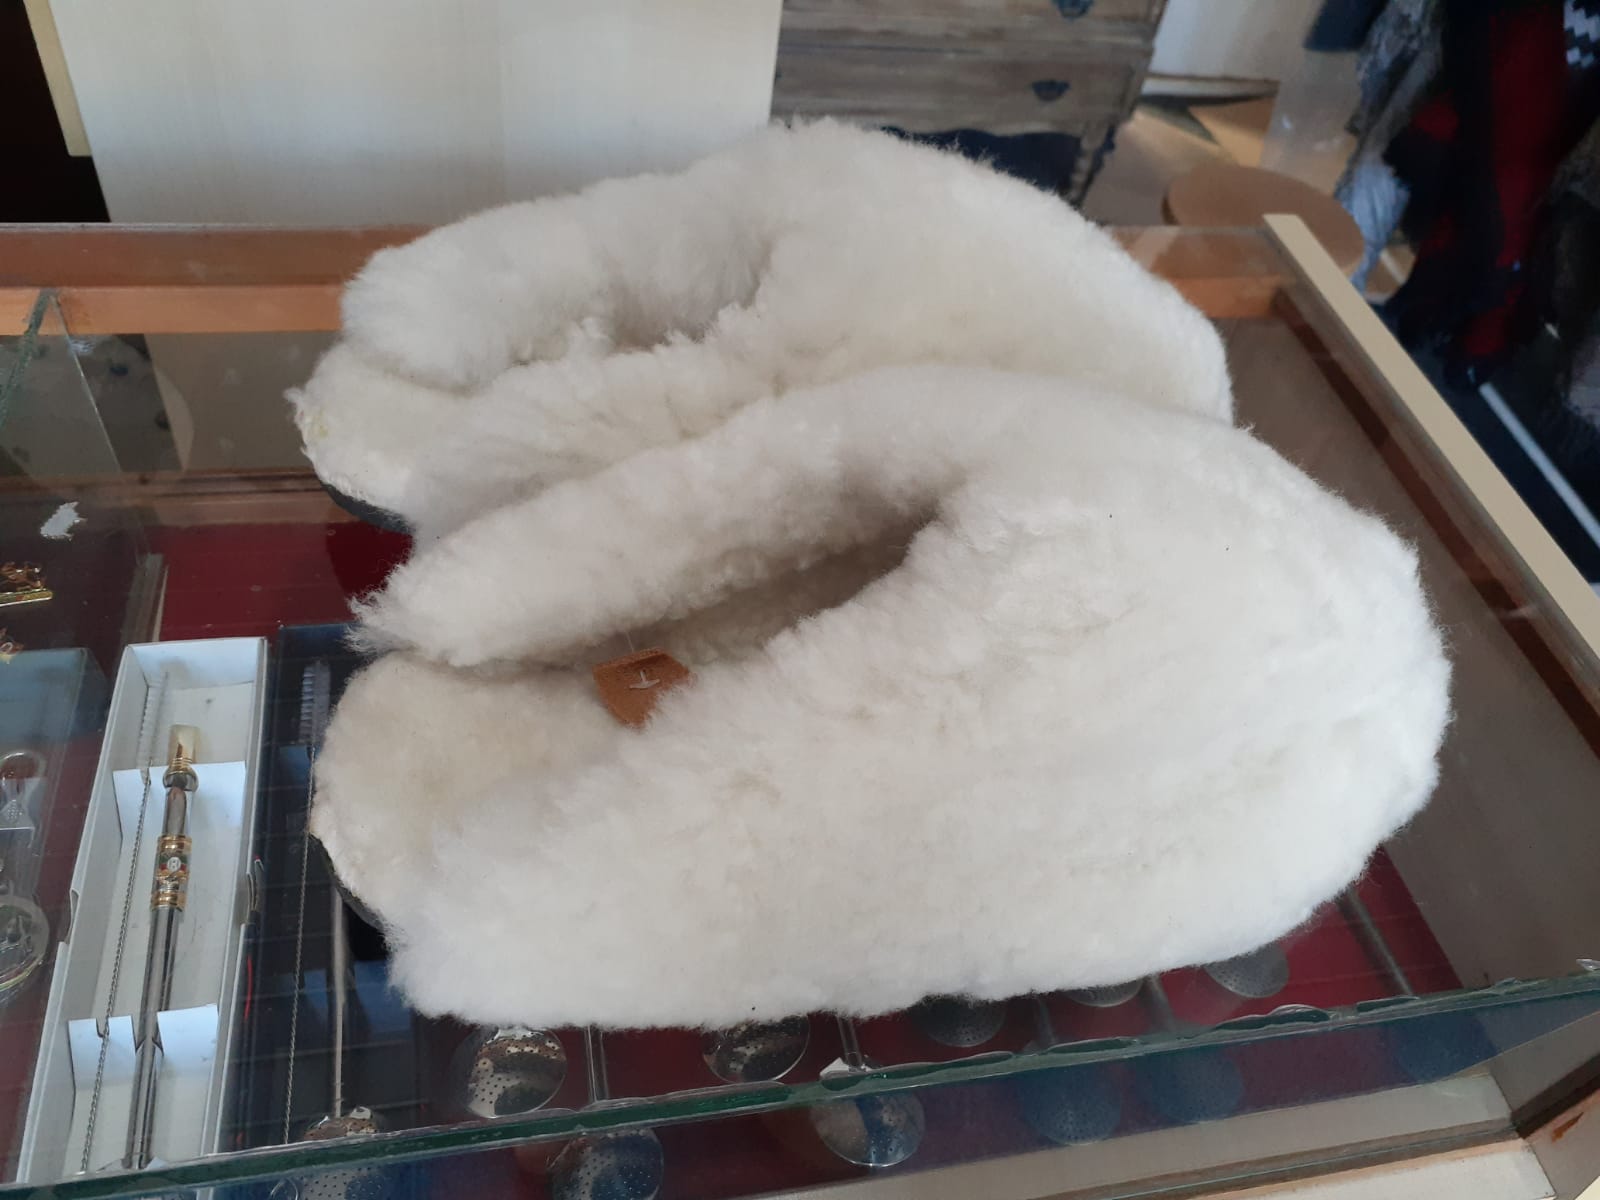 Pantufa de Lã de Ovelha Branca